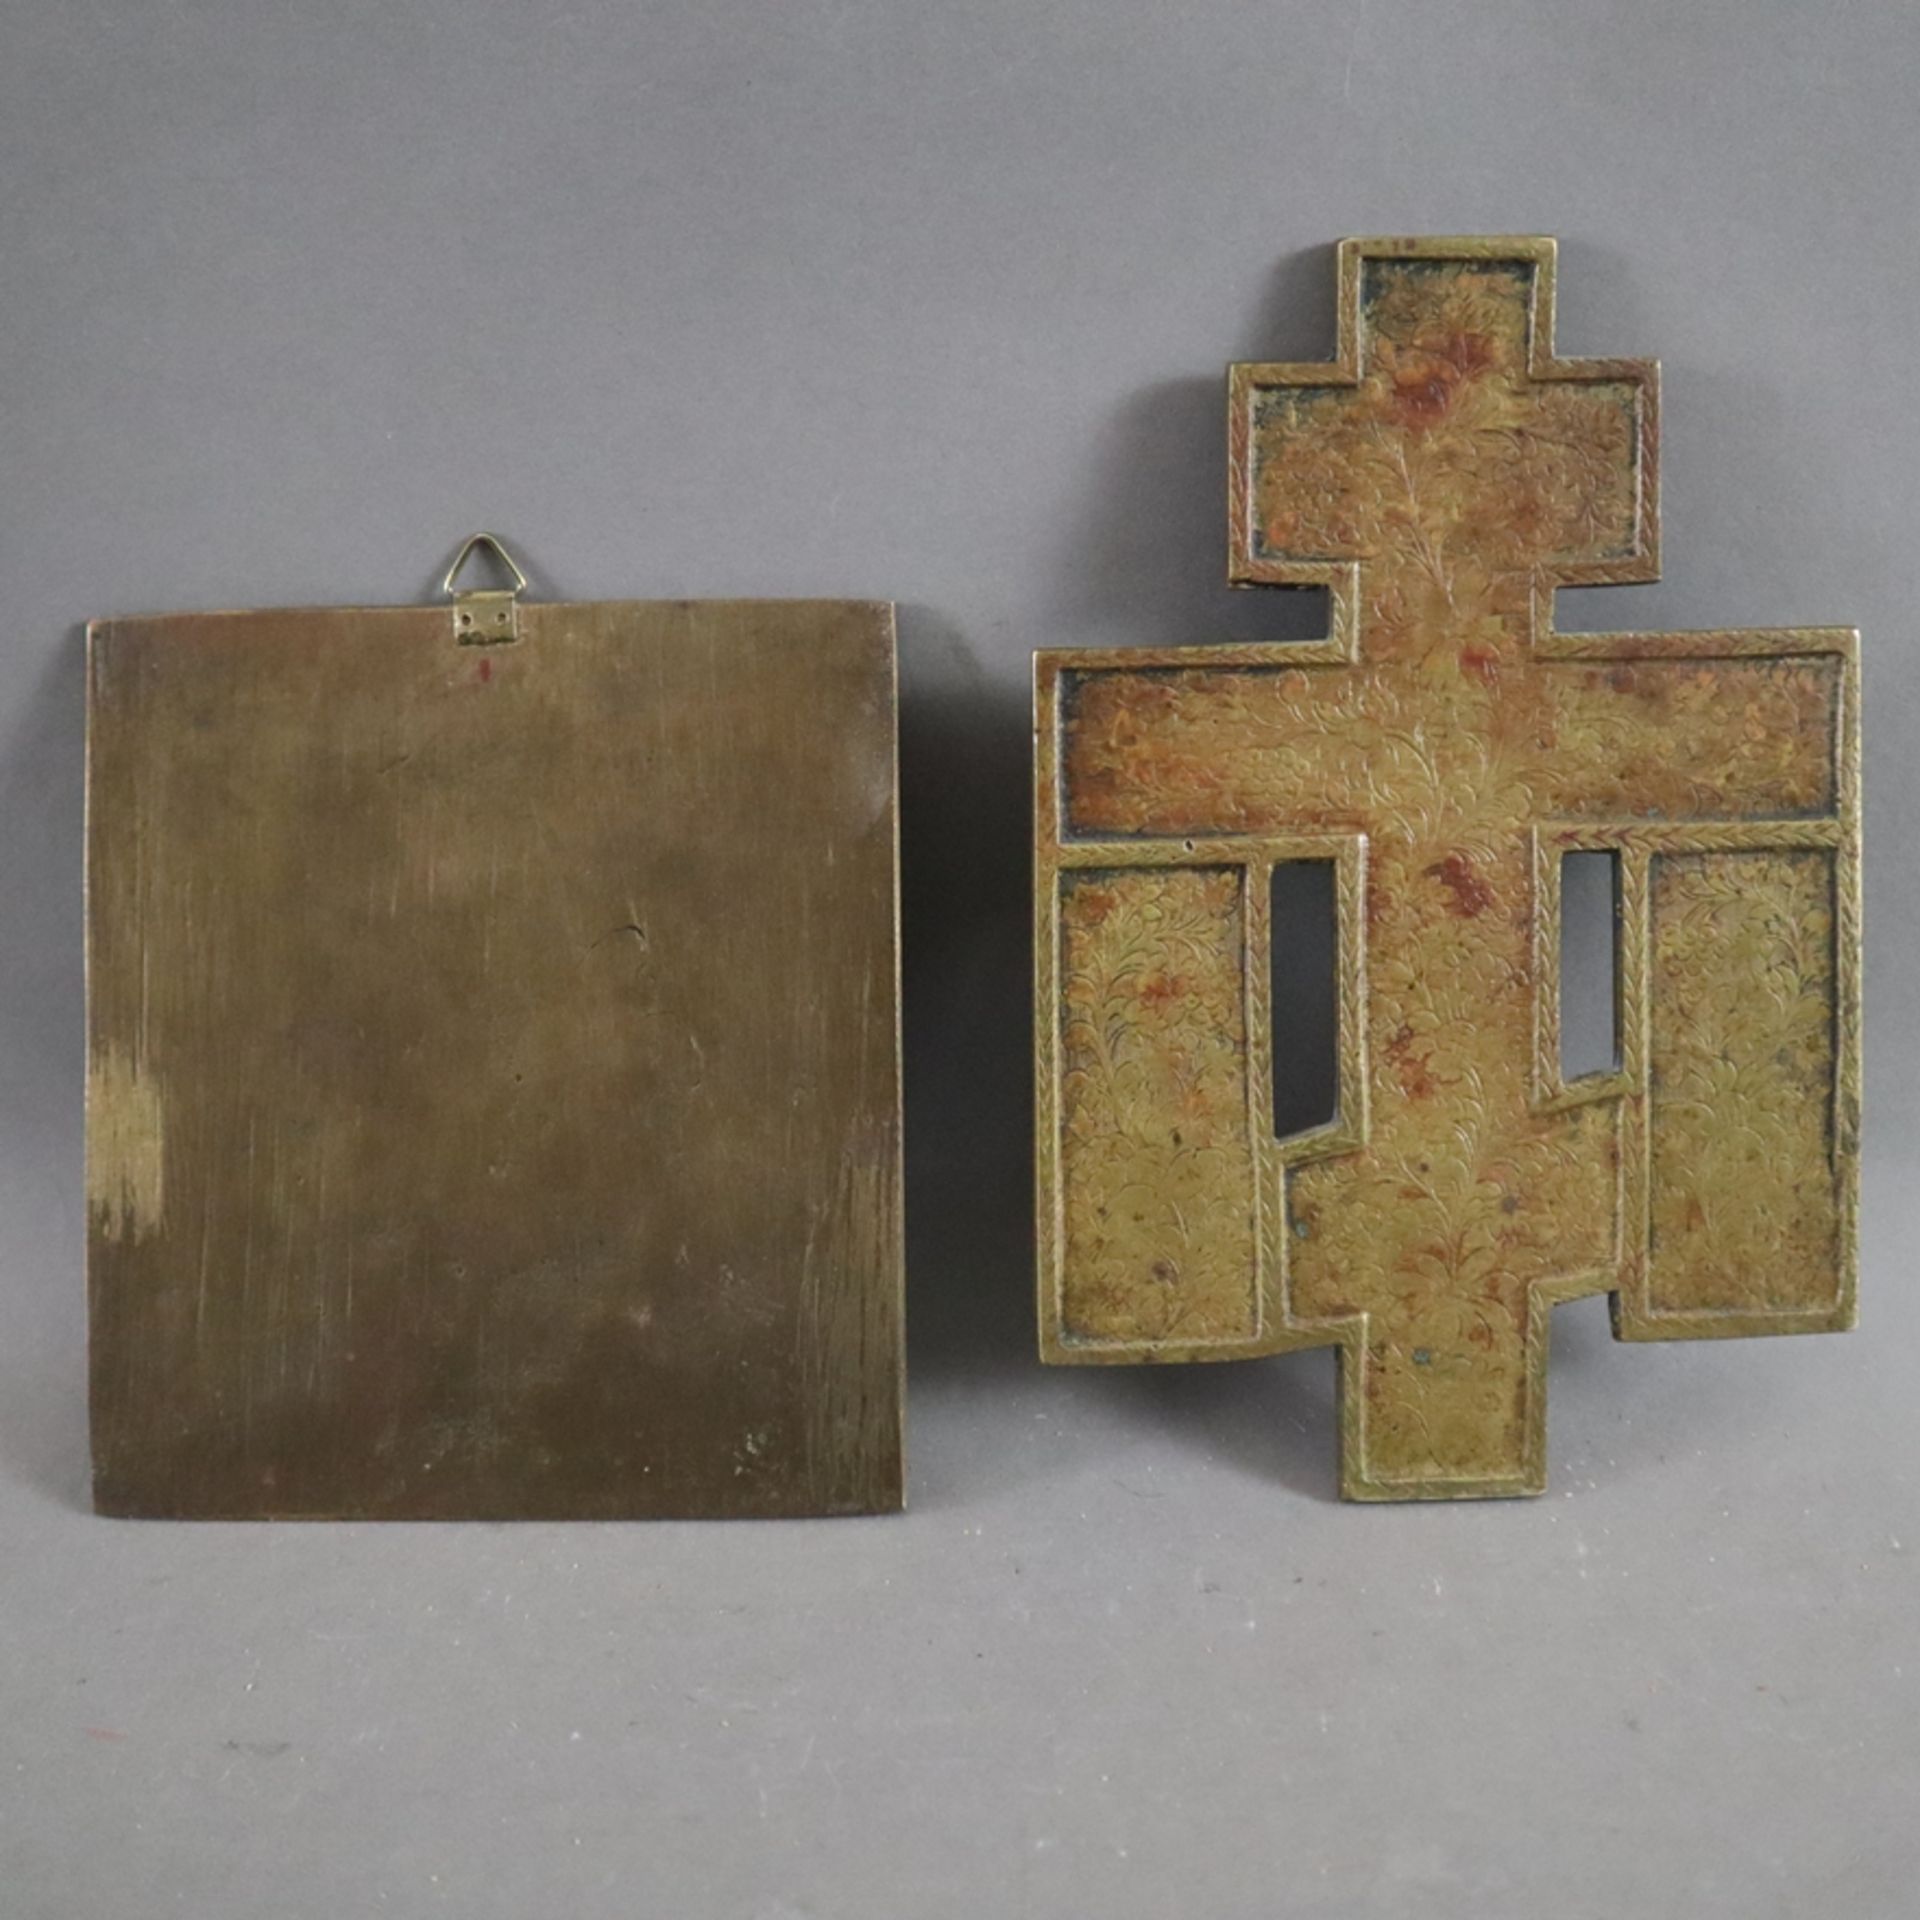 Zwei Reiseikonen - Russland, 19. Jh., Bronzelegierung, teils emailliert, 1x "Johannes der Täufer" r - Image 10 of 10